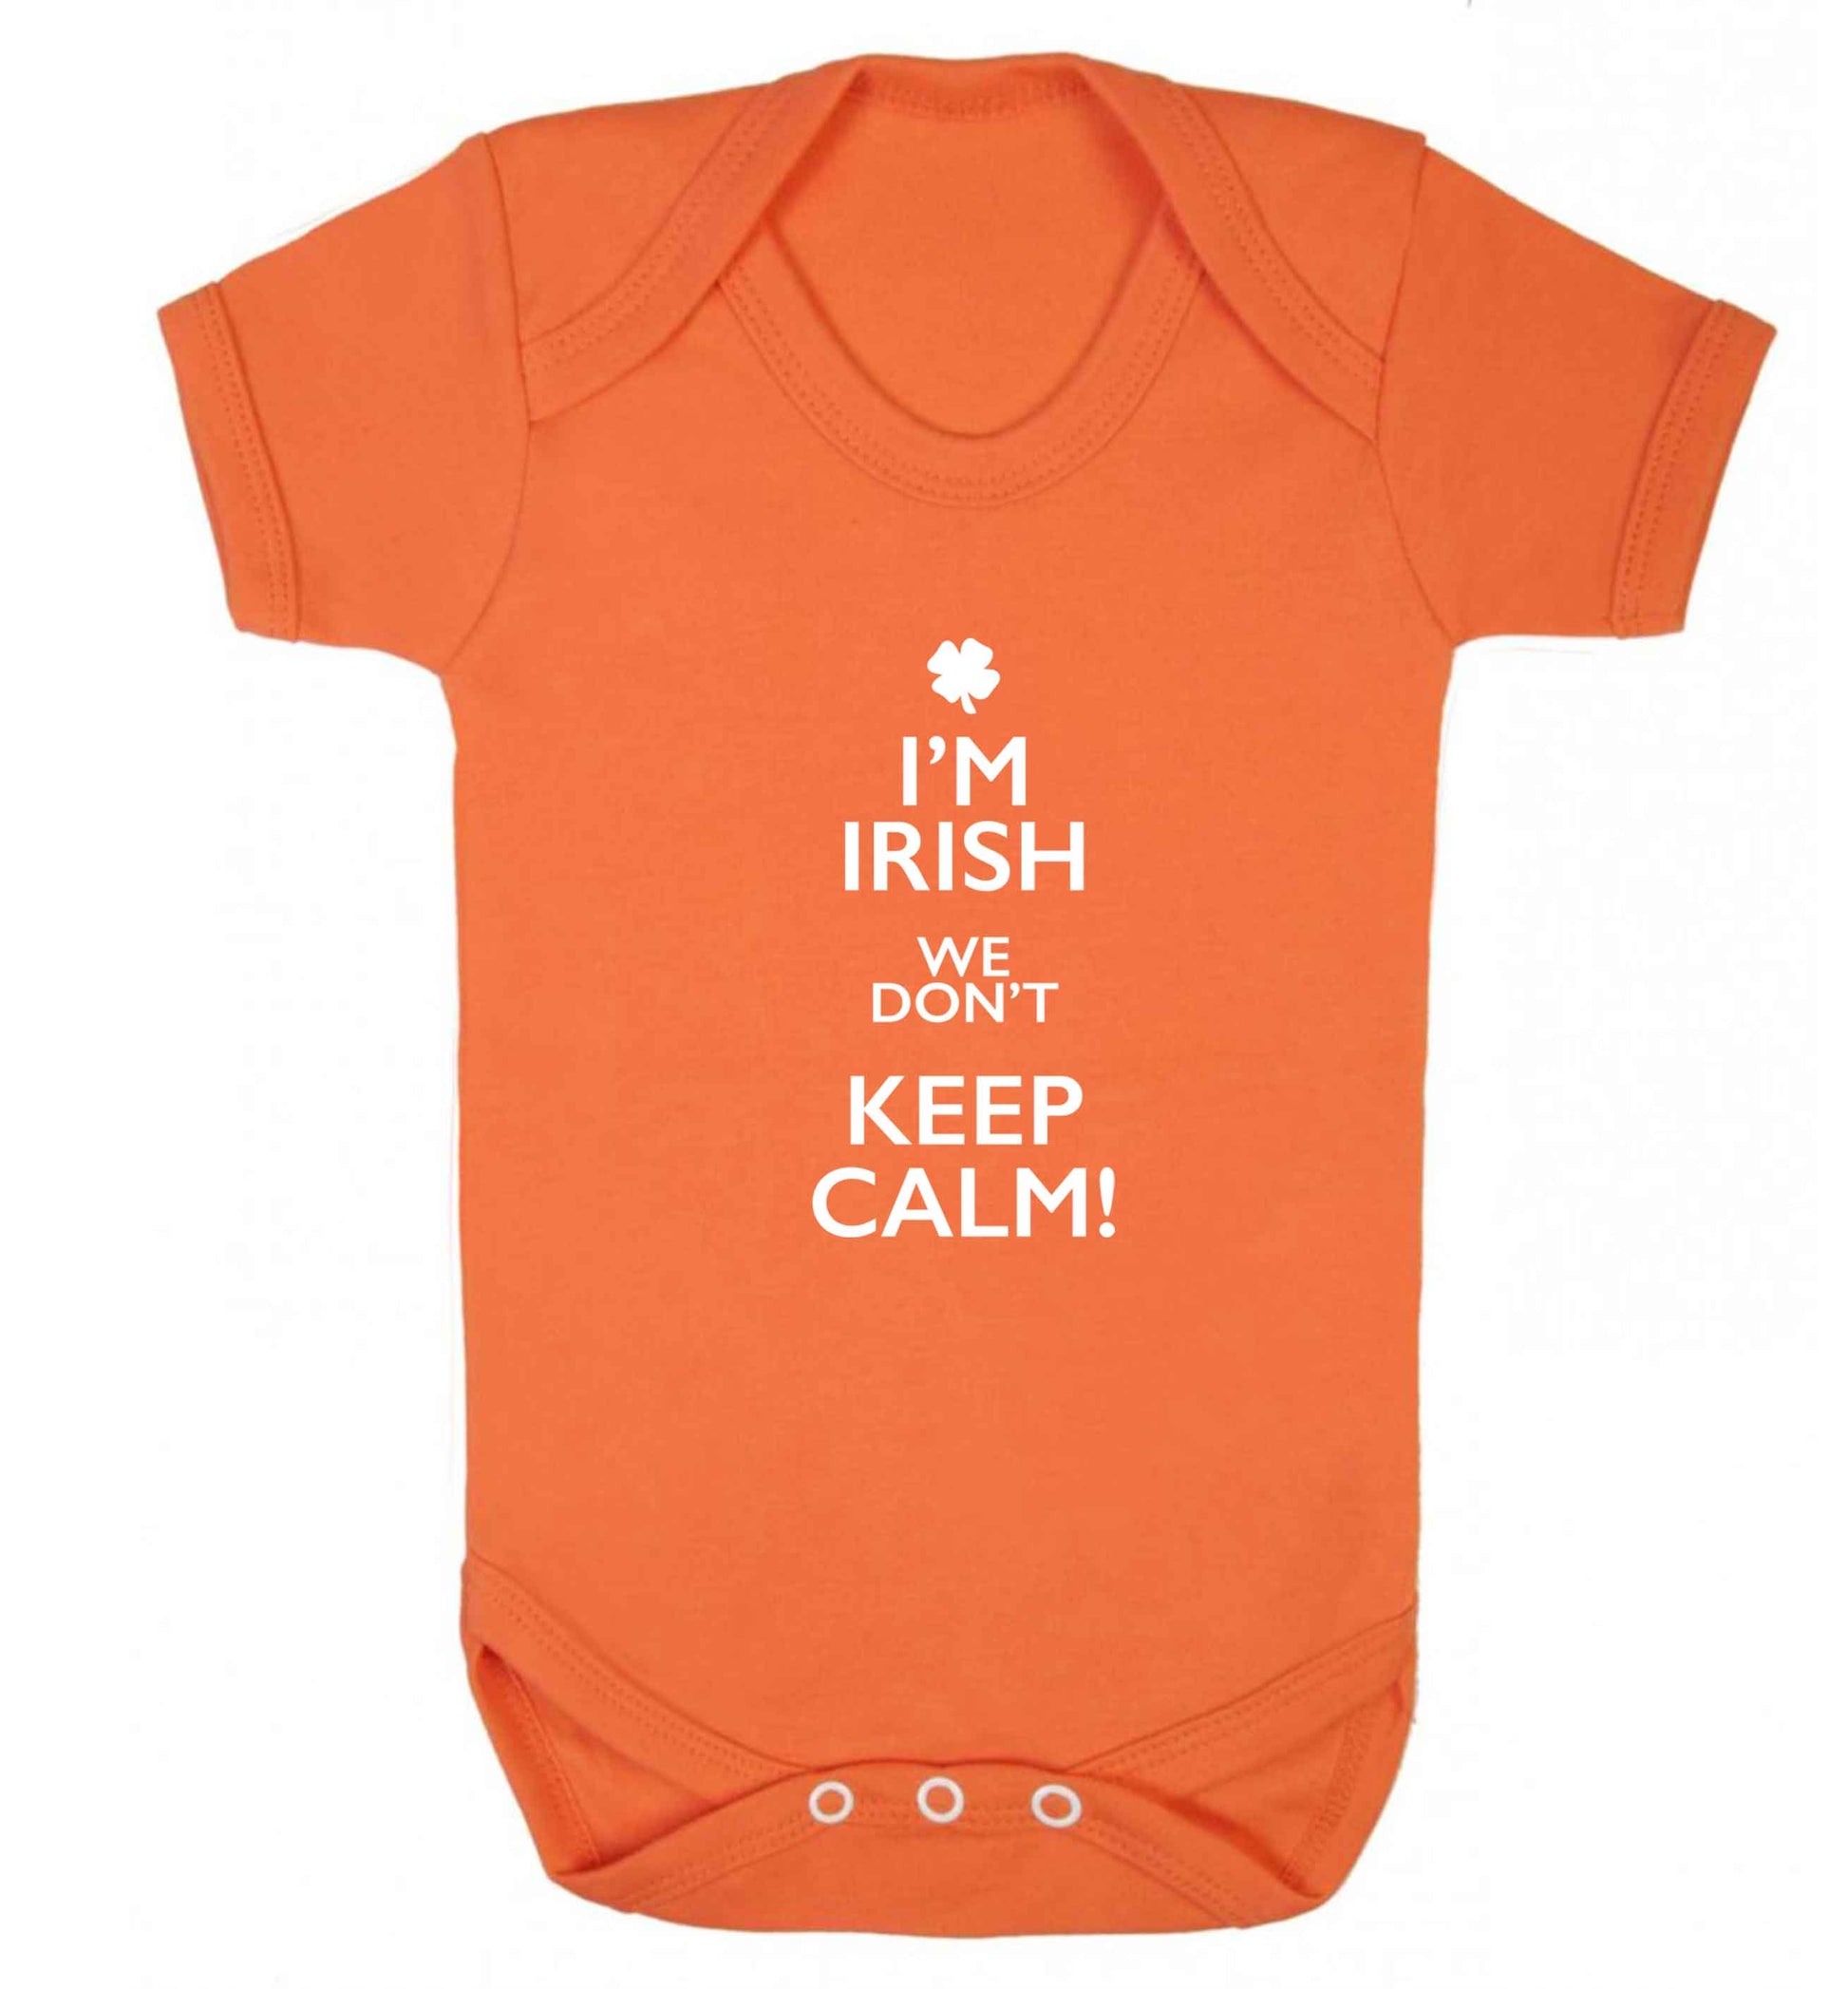 I'm Irish we don't keep calm baby vest orange 18-24 months